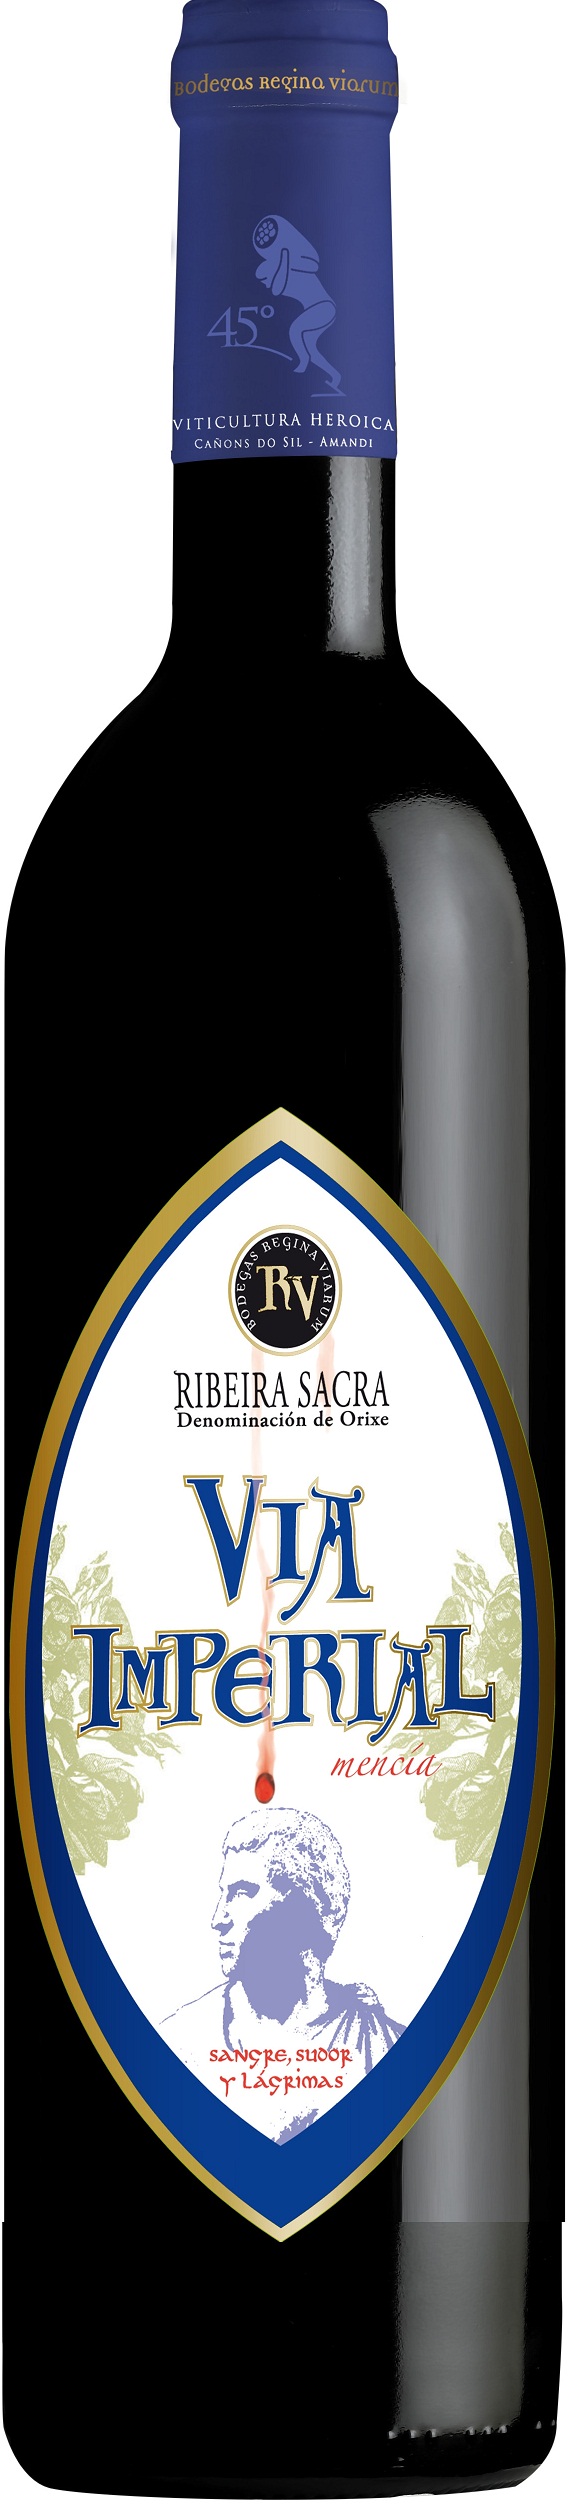 Imagen de la botella de Vino Vía Imperial